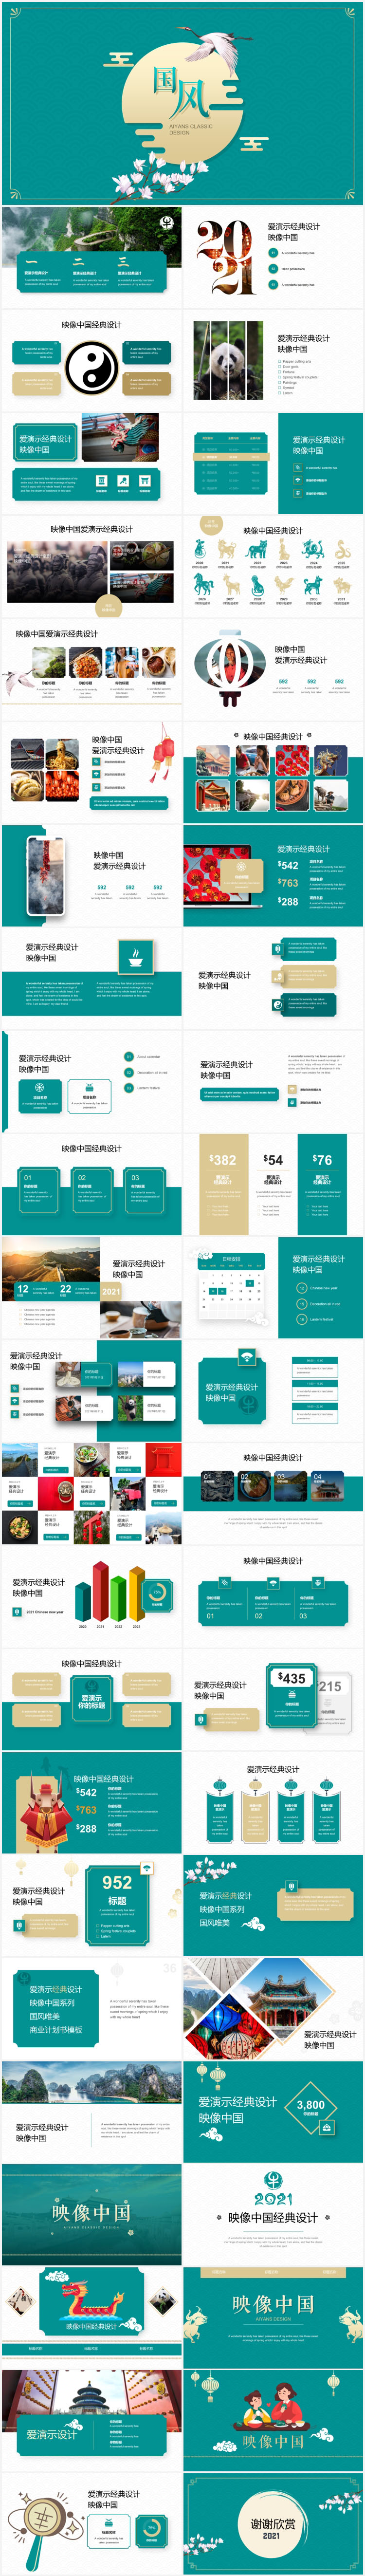 映像中国创意keynote模板